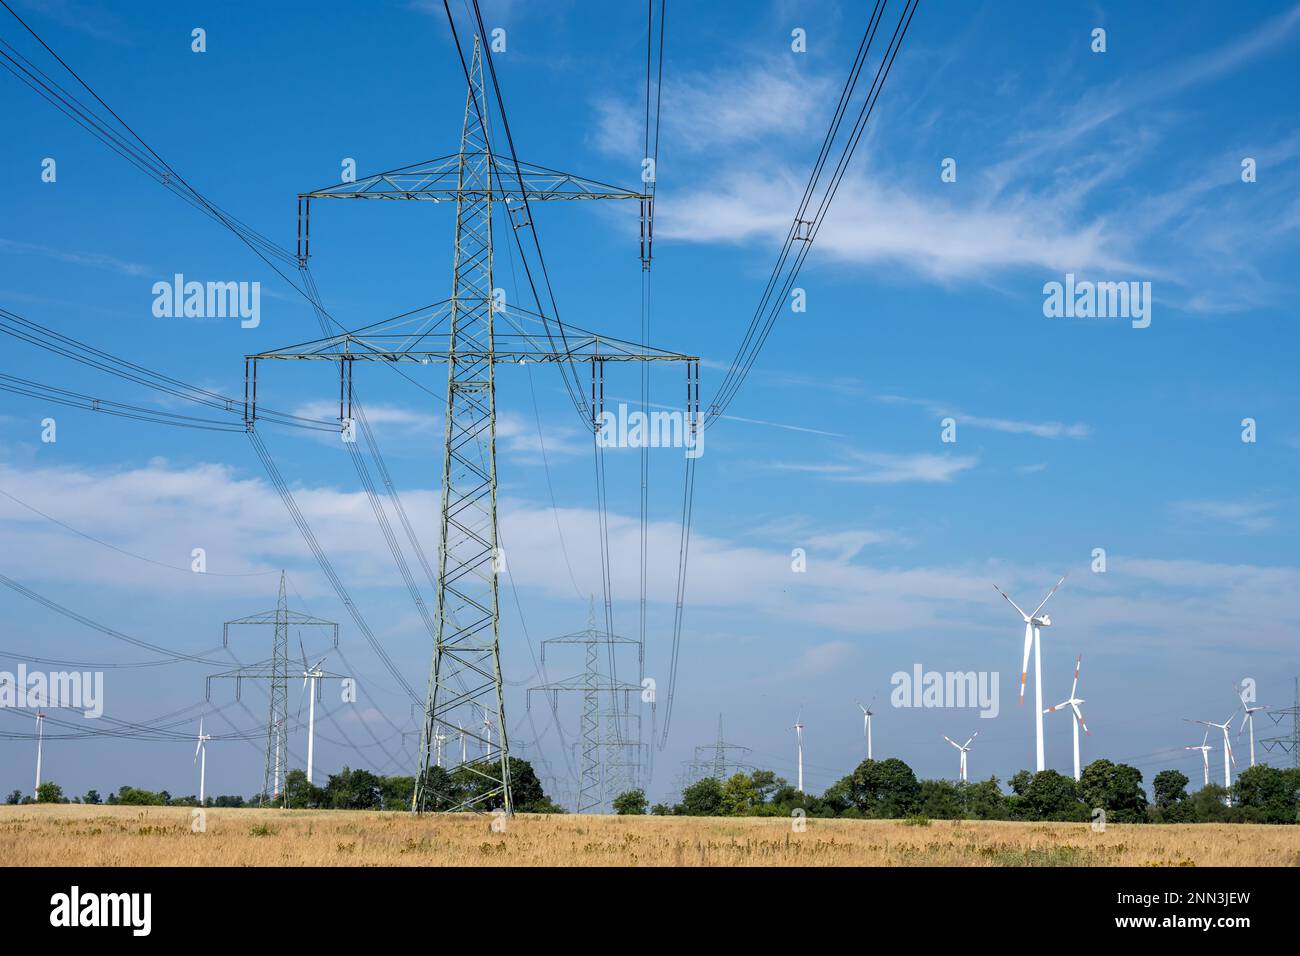 Pylônes d'électricité, lignes électriques et éoliennes vus en Allemagne Banque D'Images